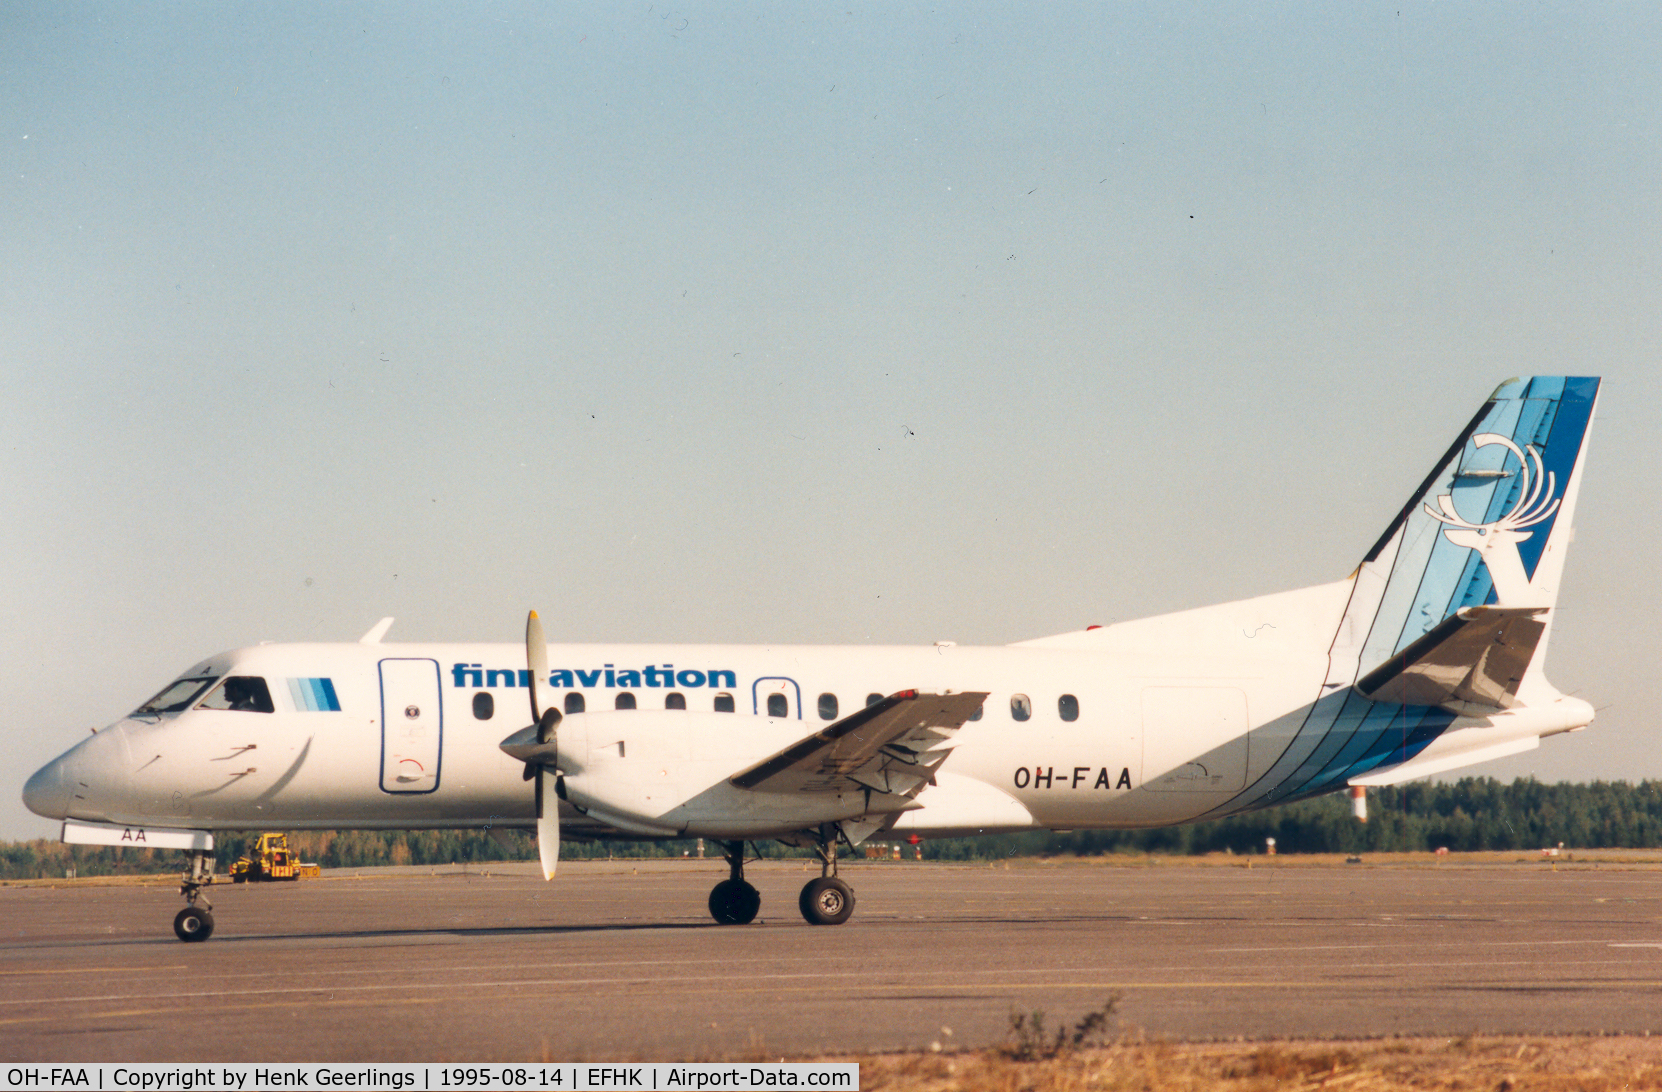 OH-FAA, 1986 Saab 340A C/N 340A-065, Finnaviation